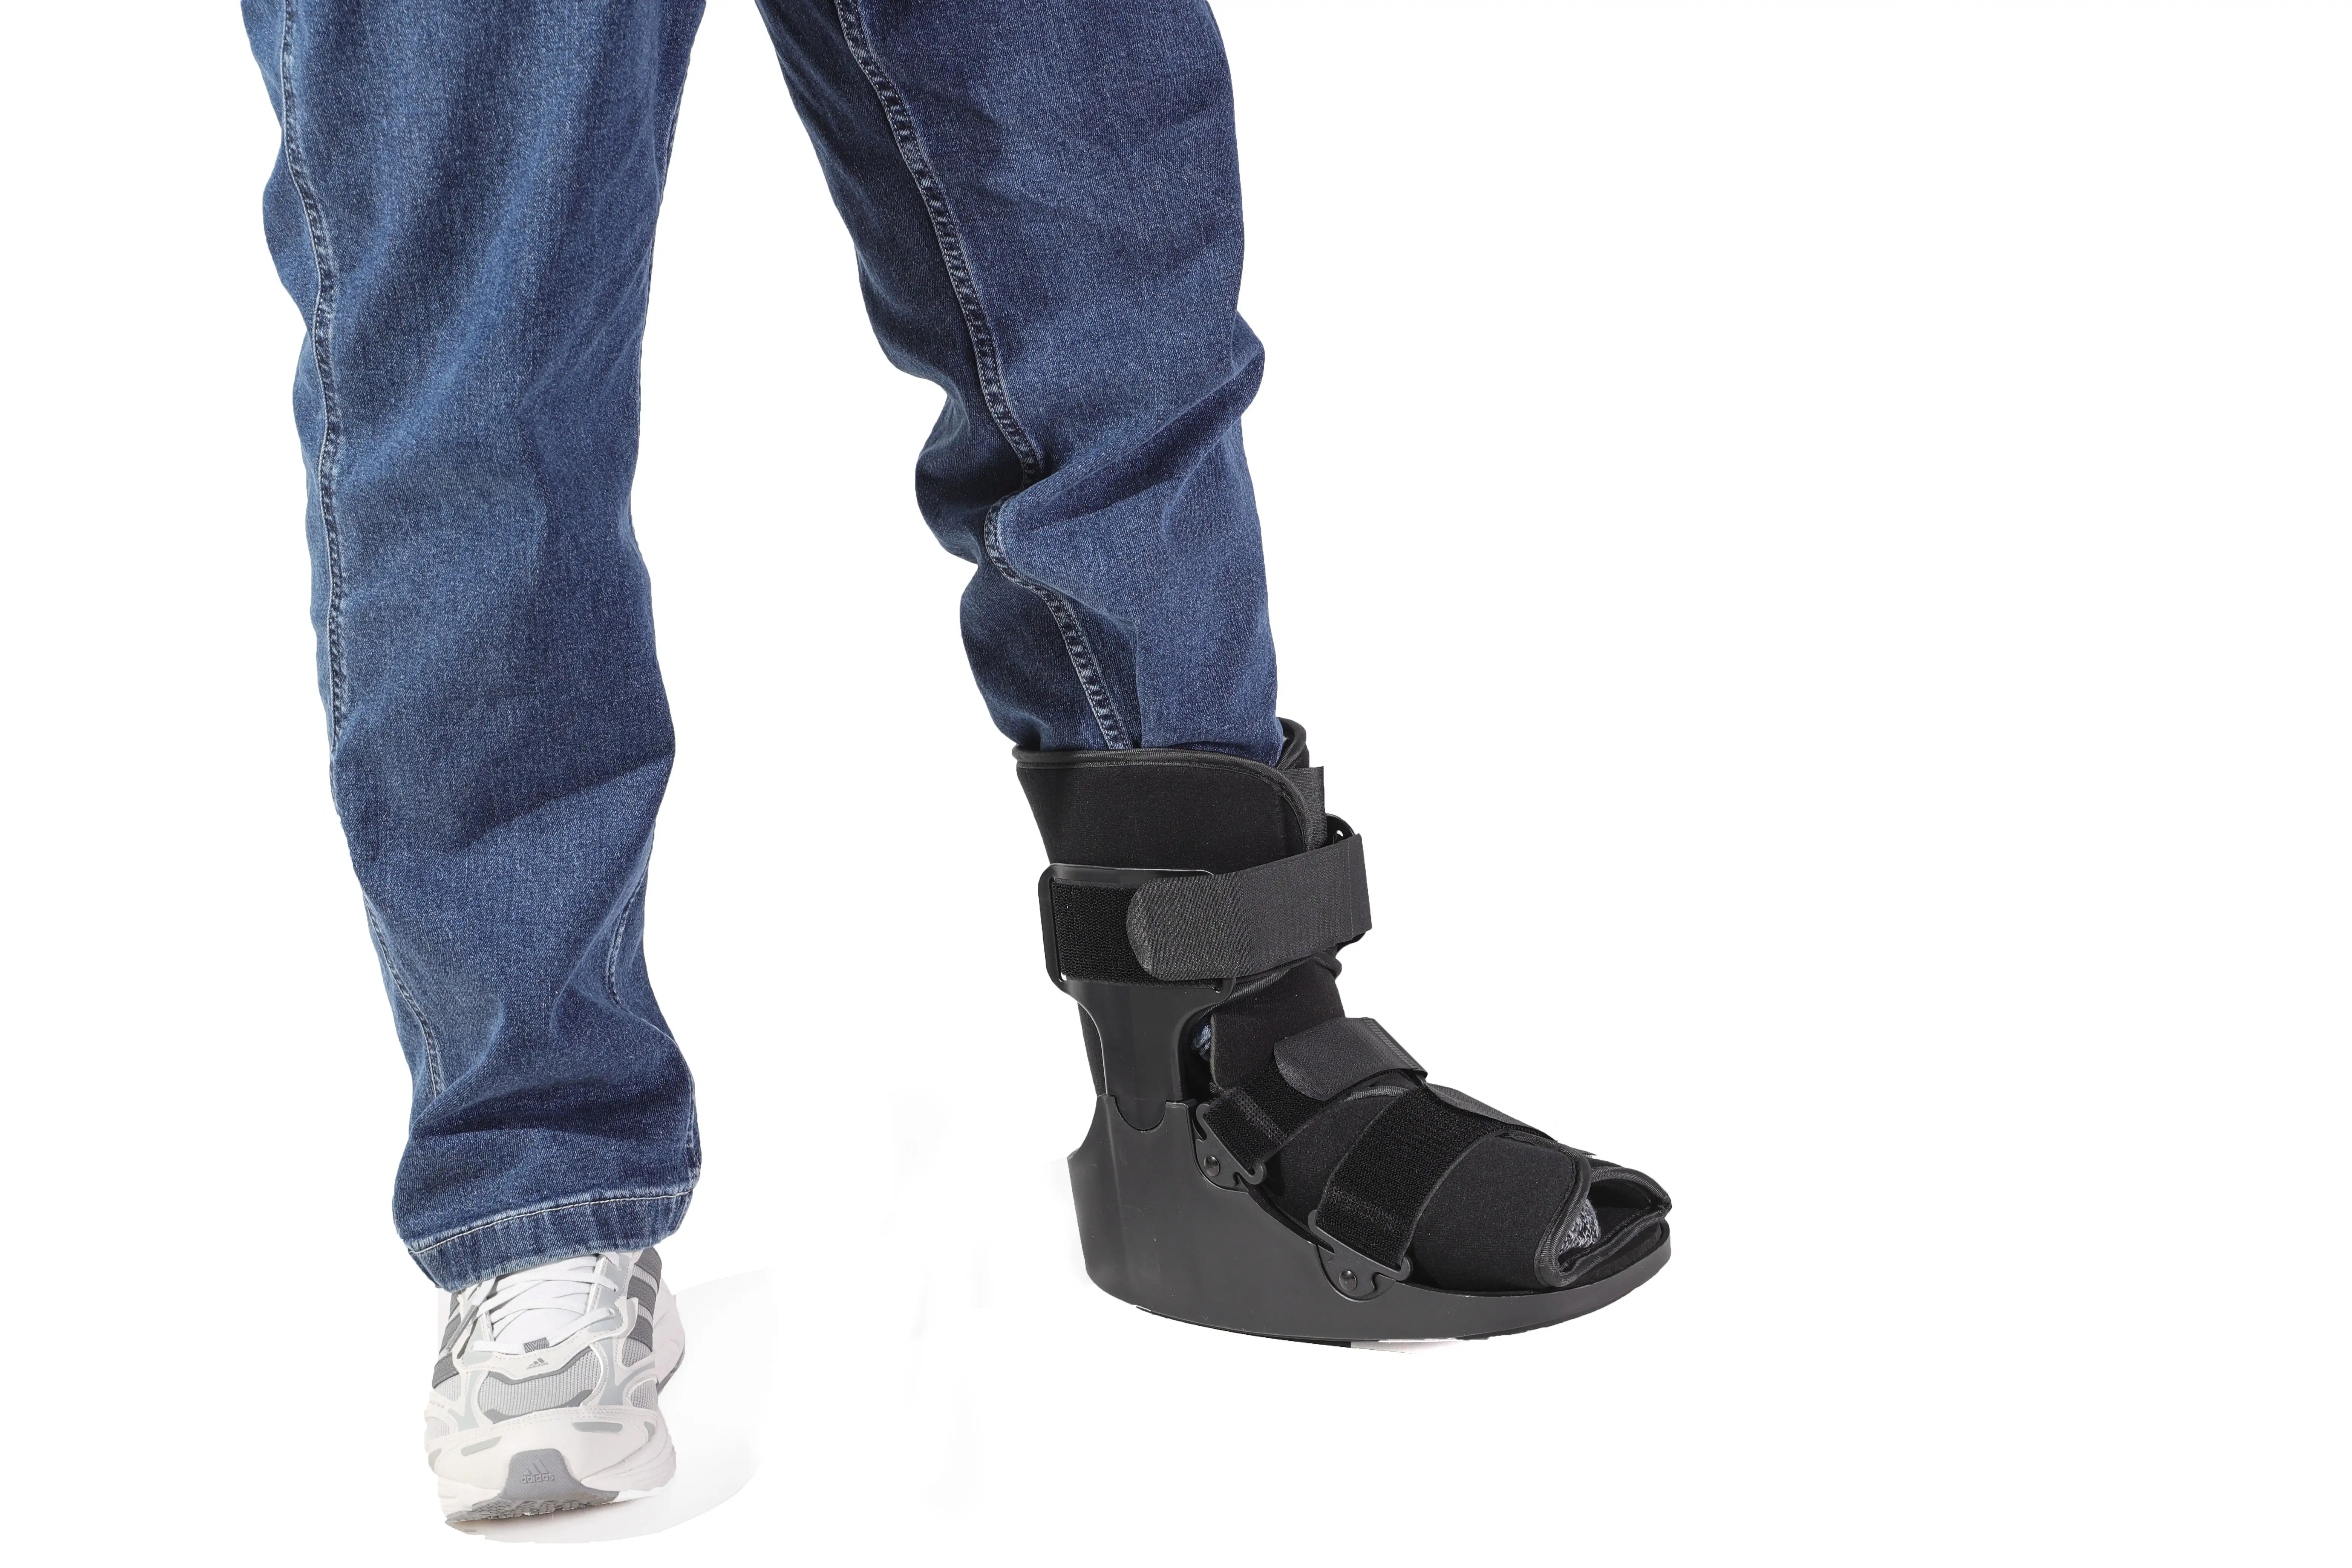 Leichte Short Ankle Walker Boots für die Knöchel rehabilitation